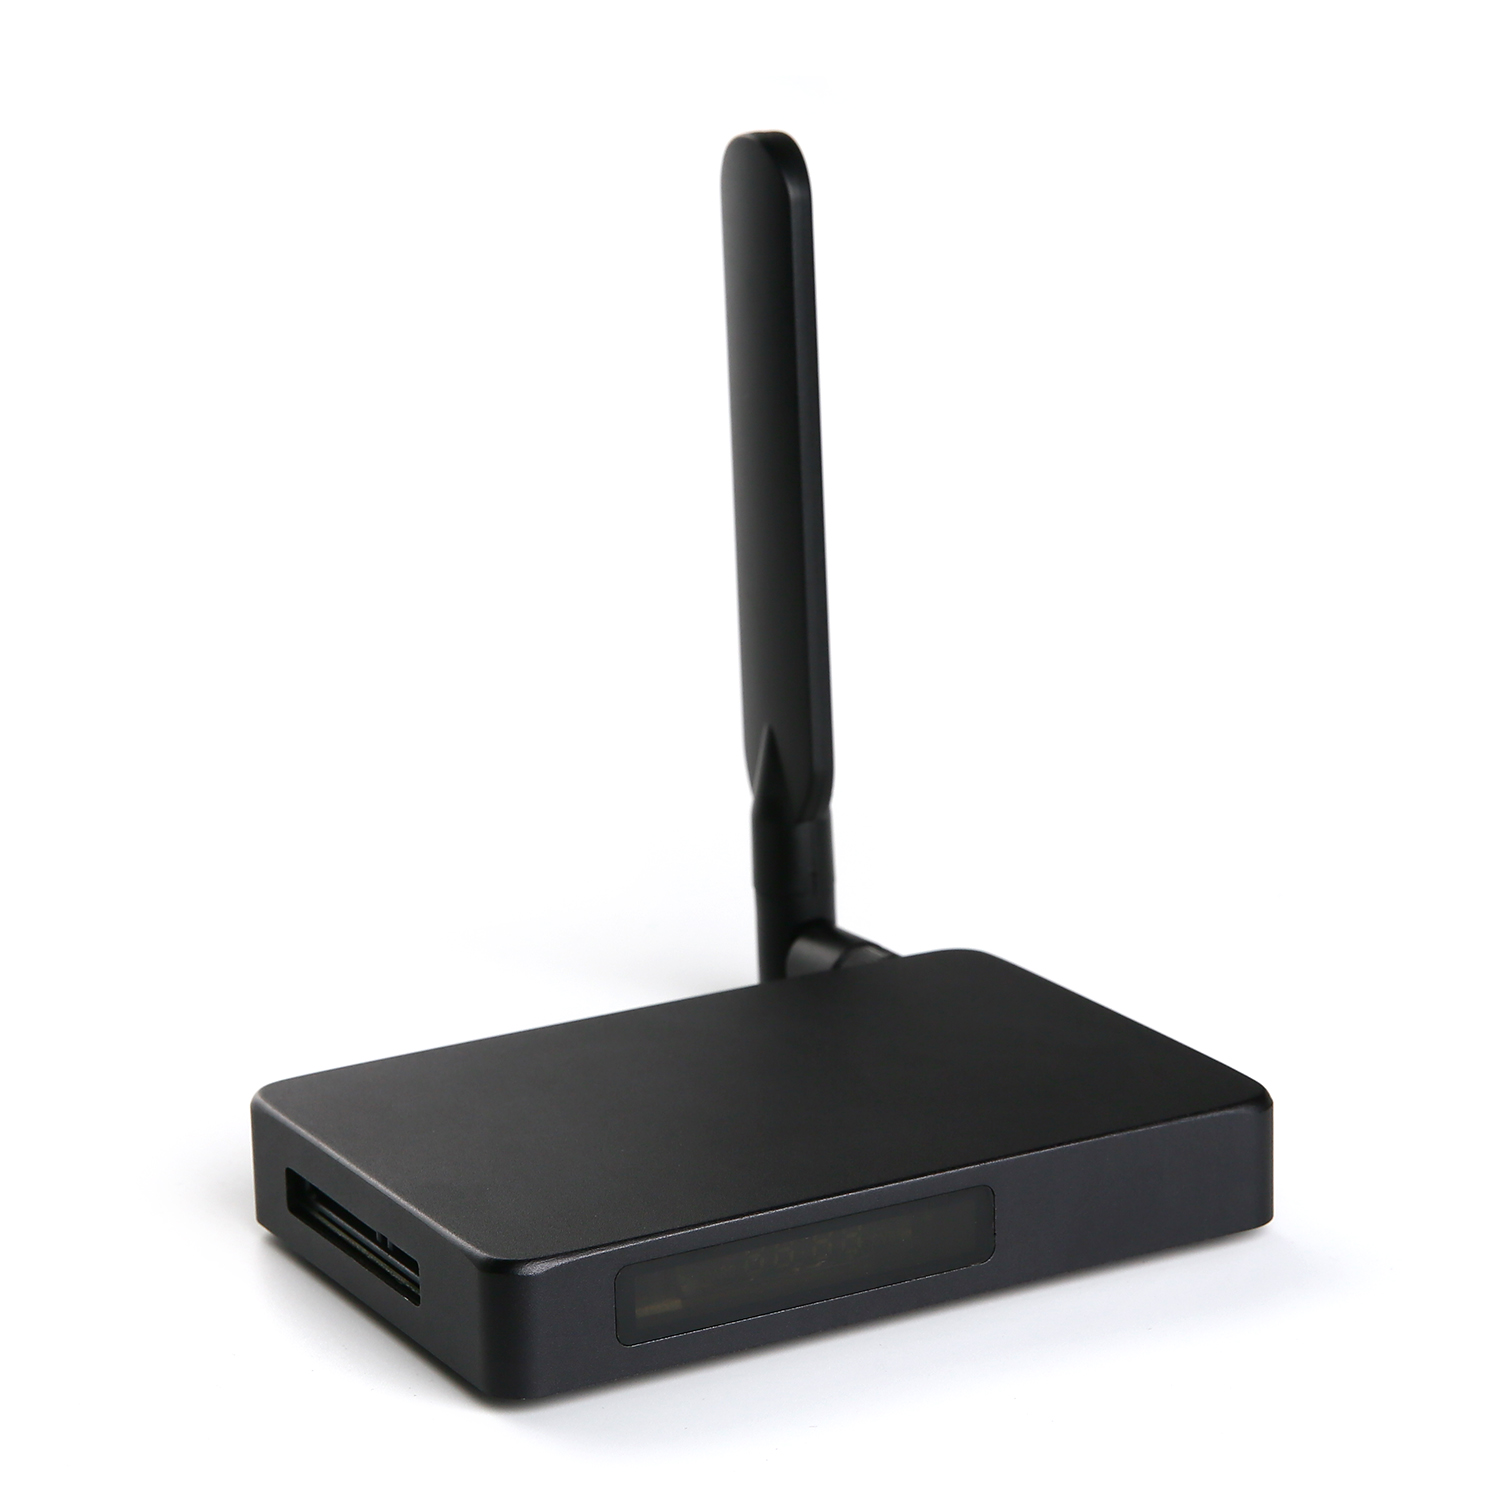 Sblocca una connettività illimitata con il nostro Internet TV Box: la migliore esperienza di ingresso HDMI, basata su Realtek RTD1295